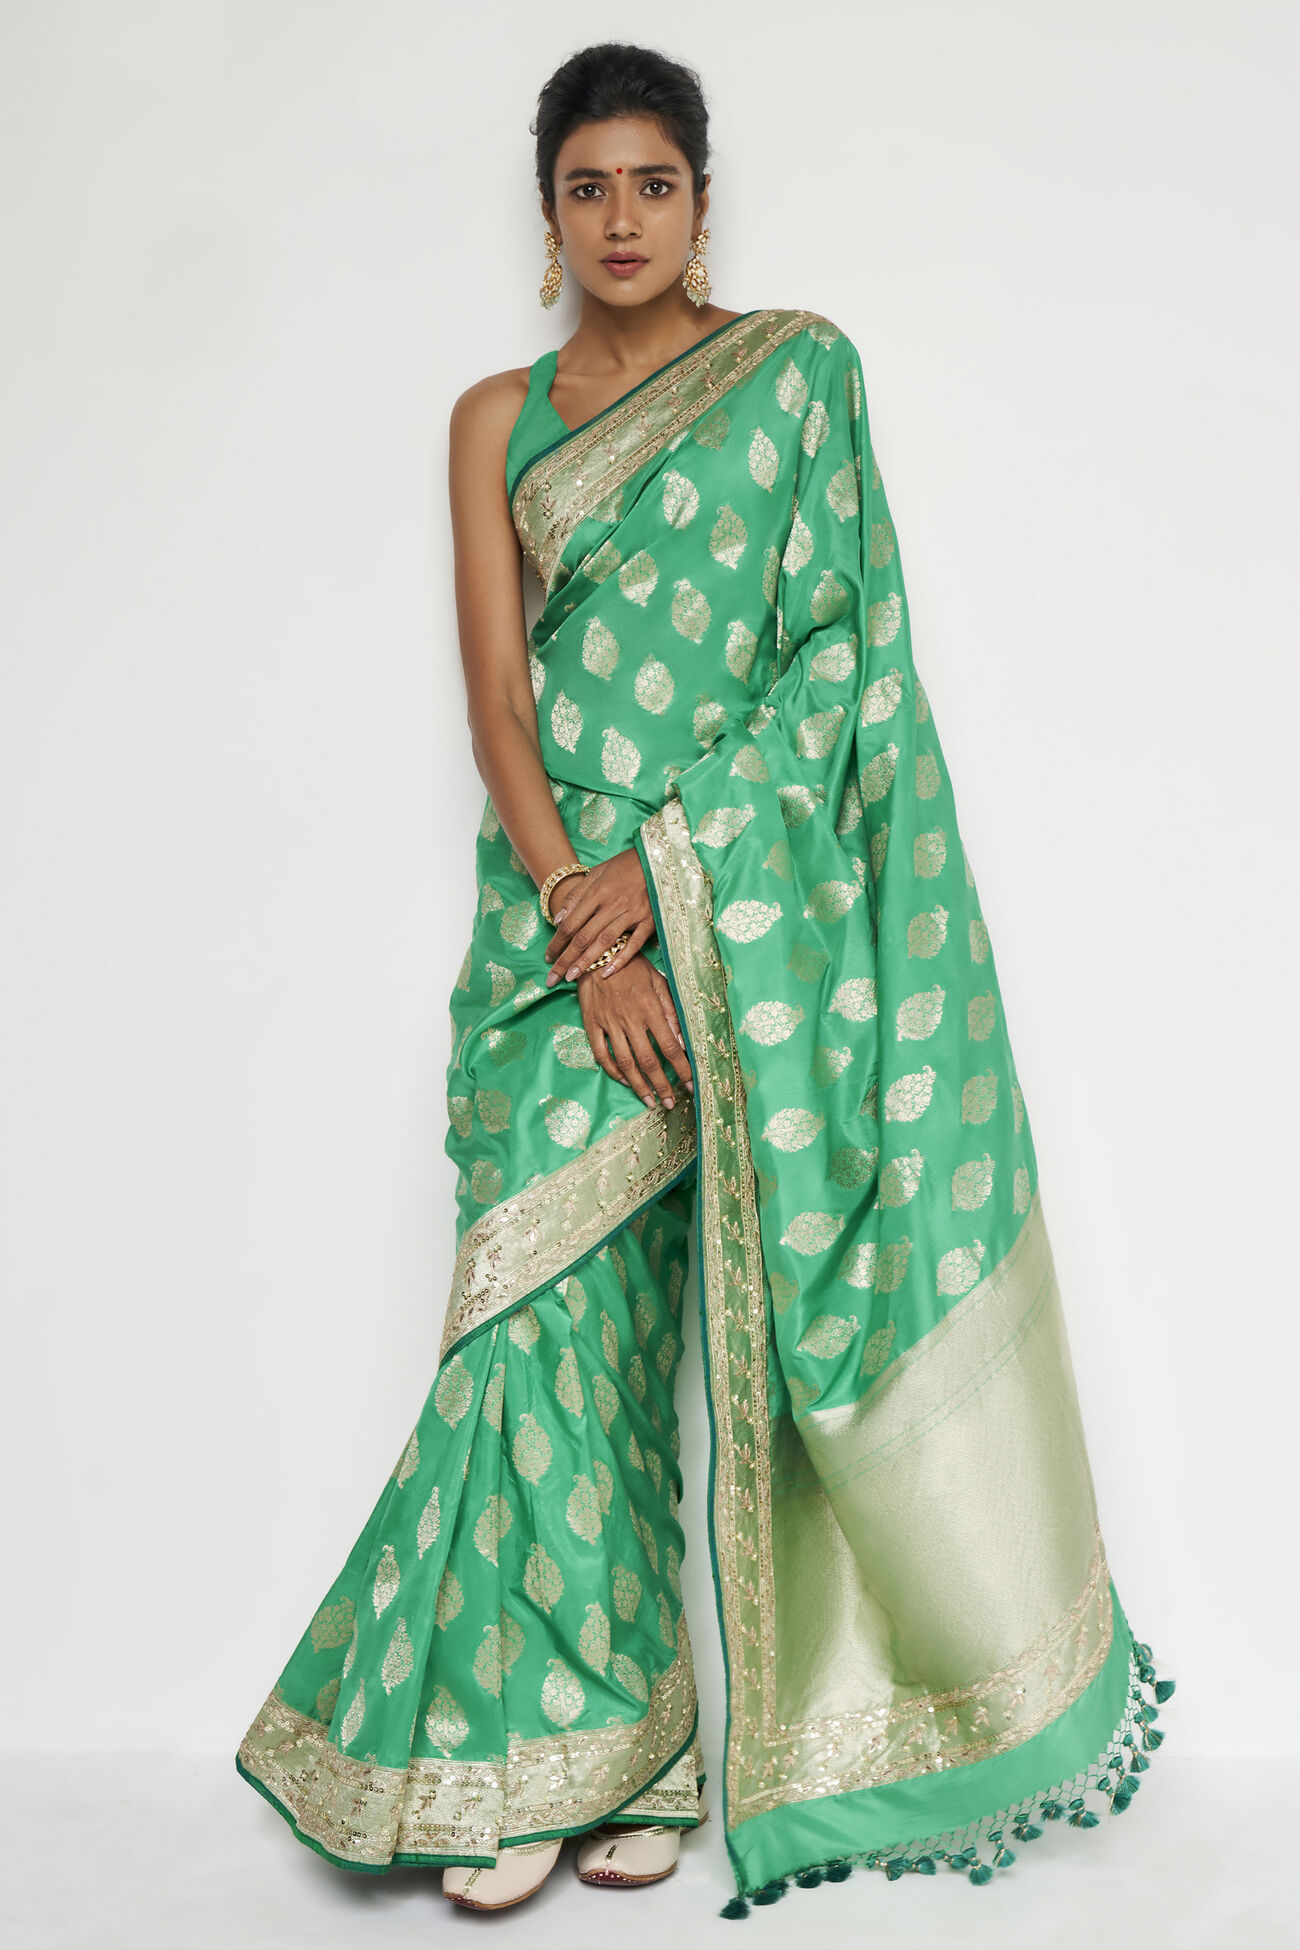 Adaj Benarasi Saree - Green, Green, image 1